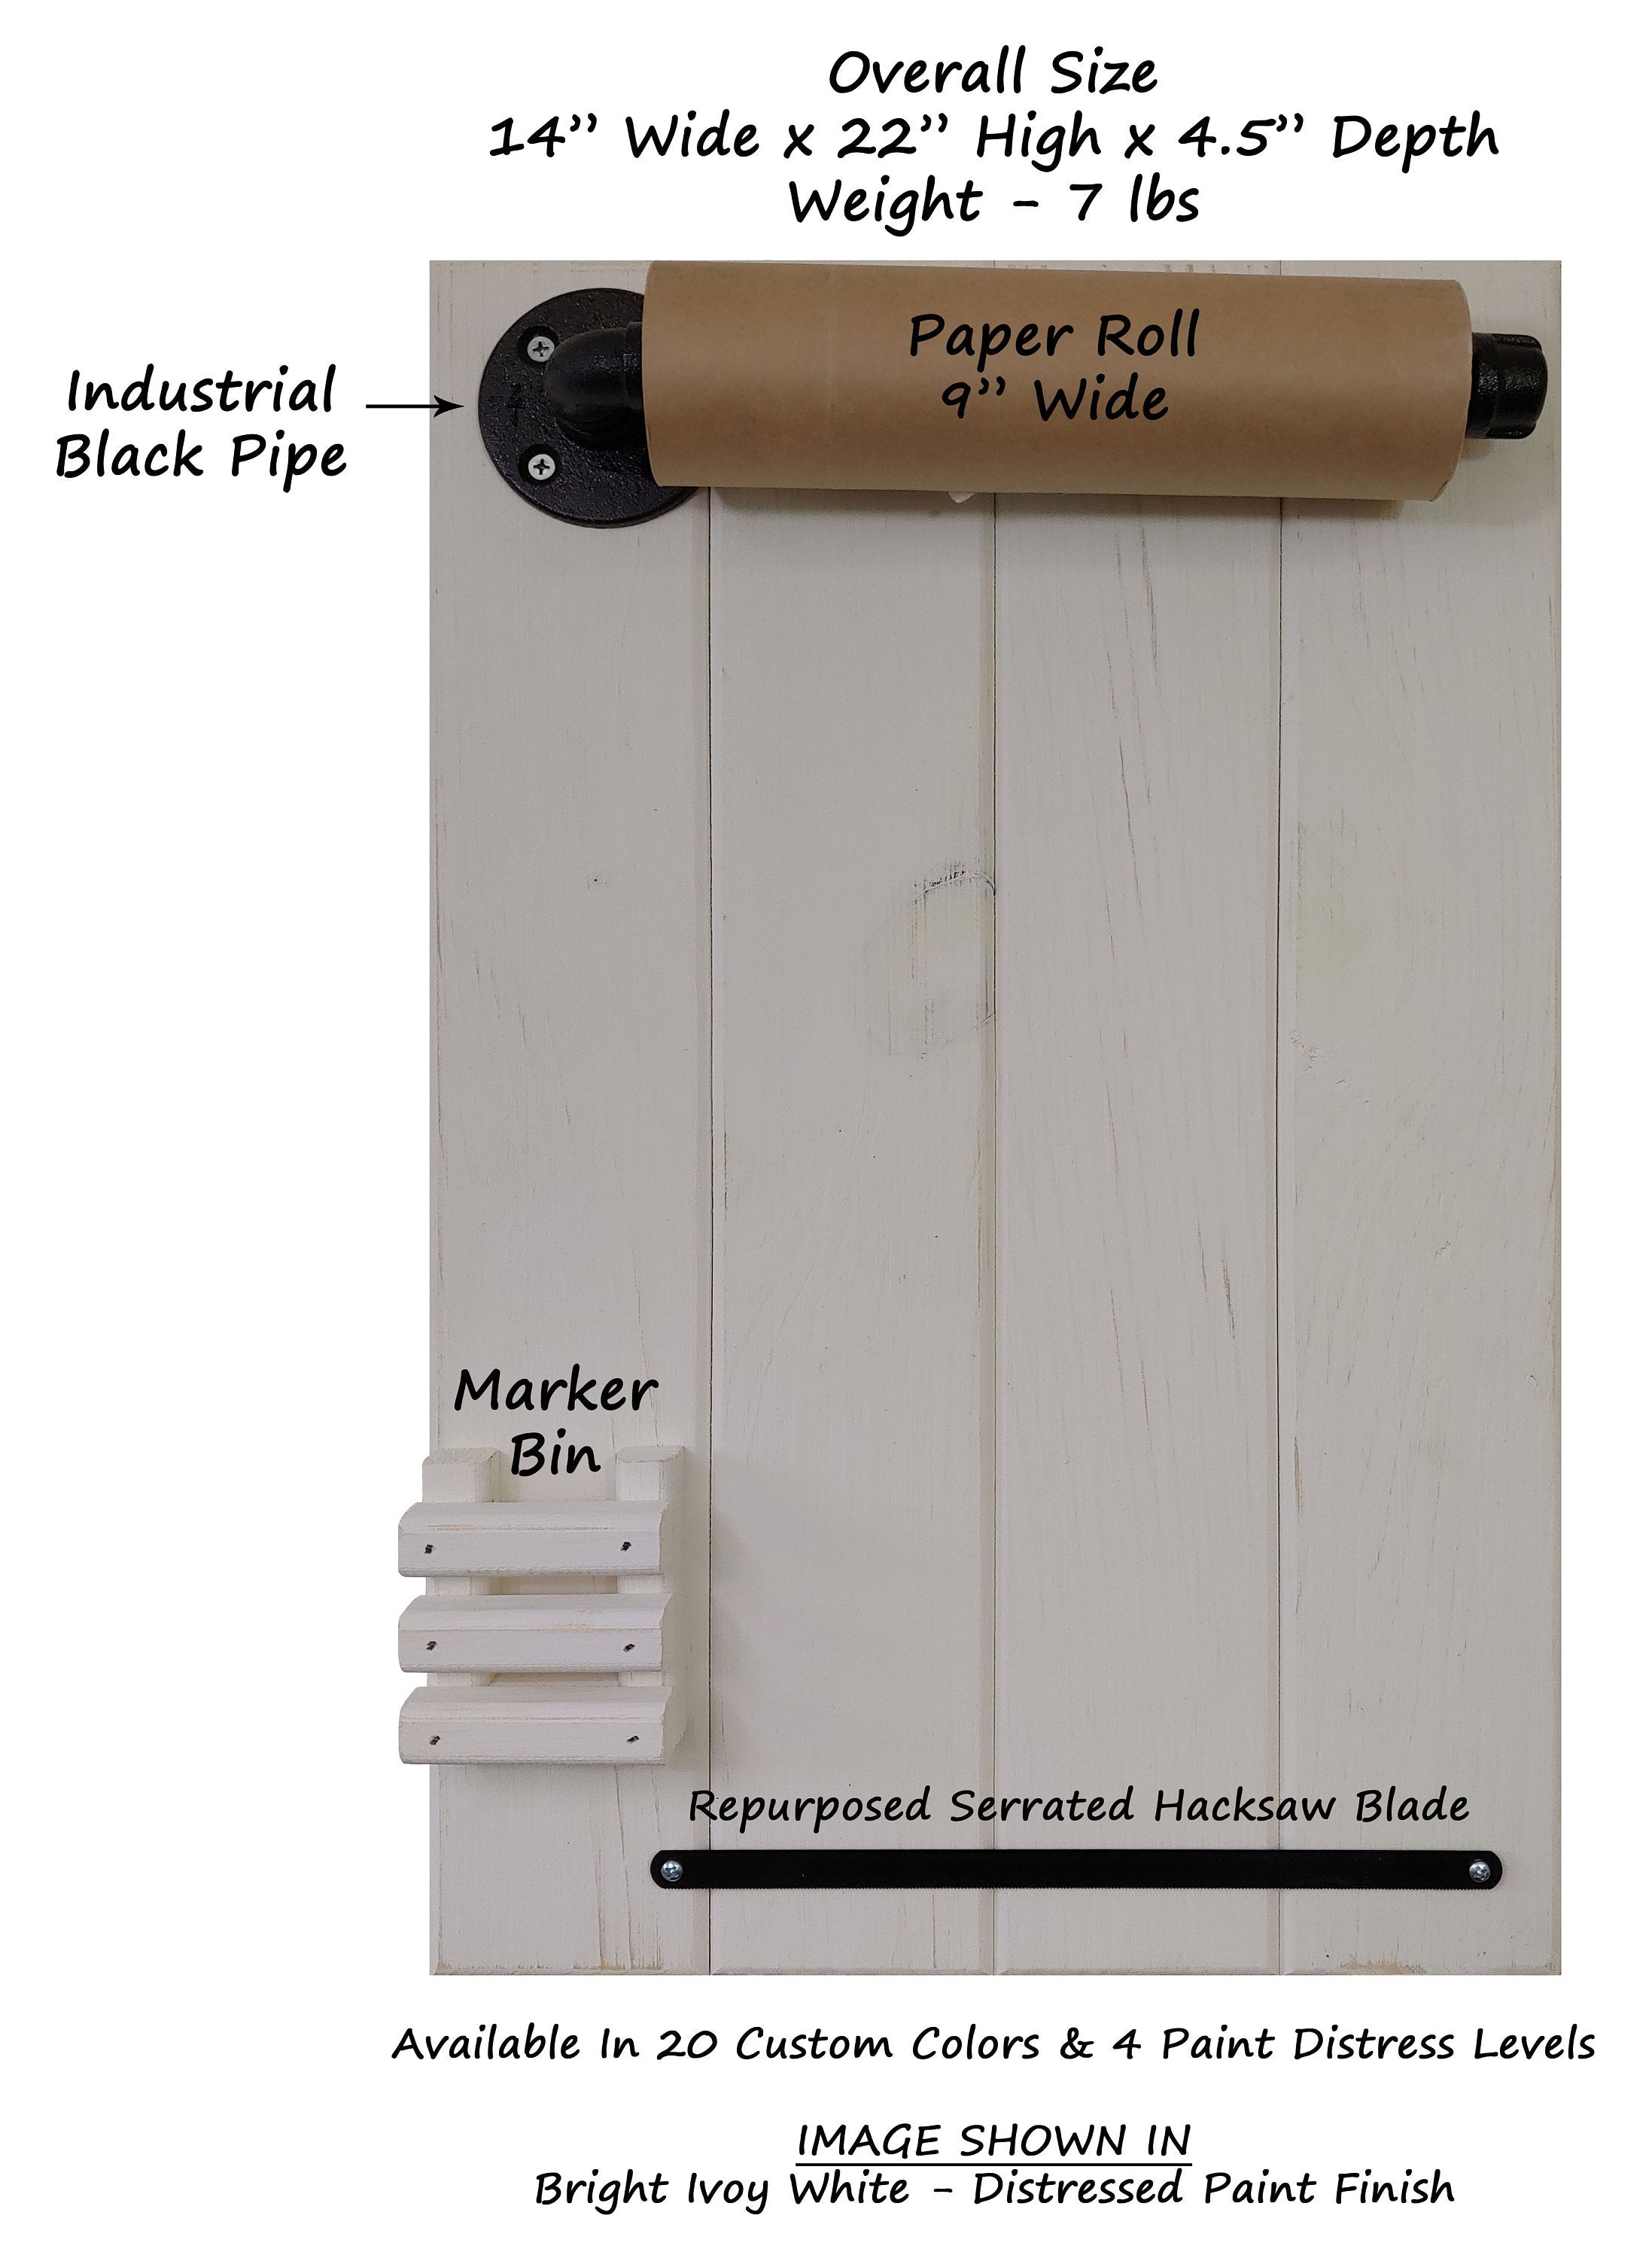 Wall-Mounted Kraft Paper Roll Dispenser